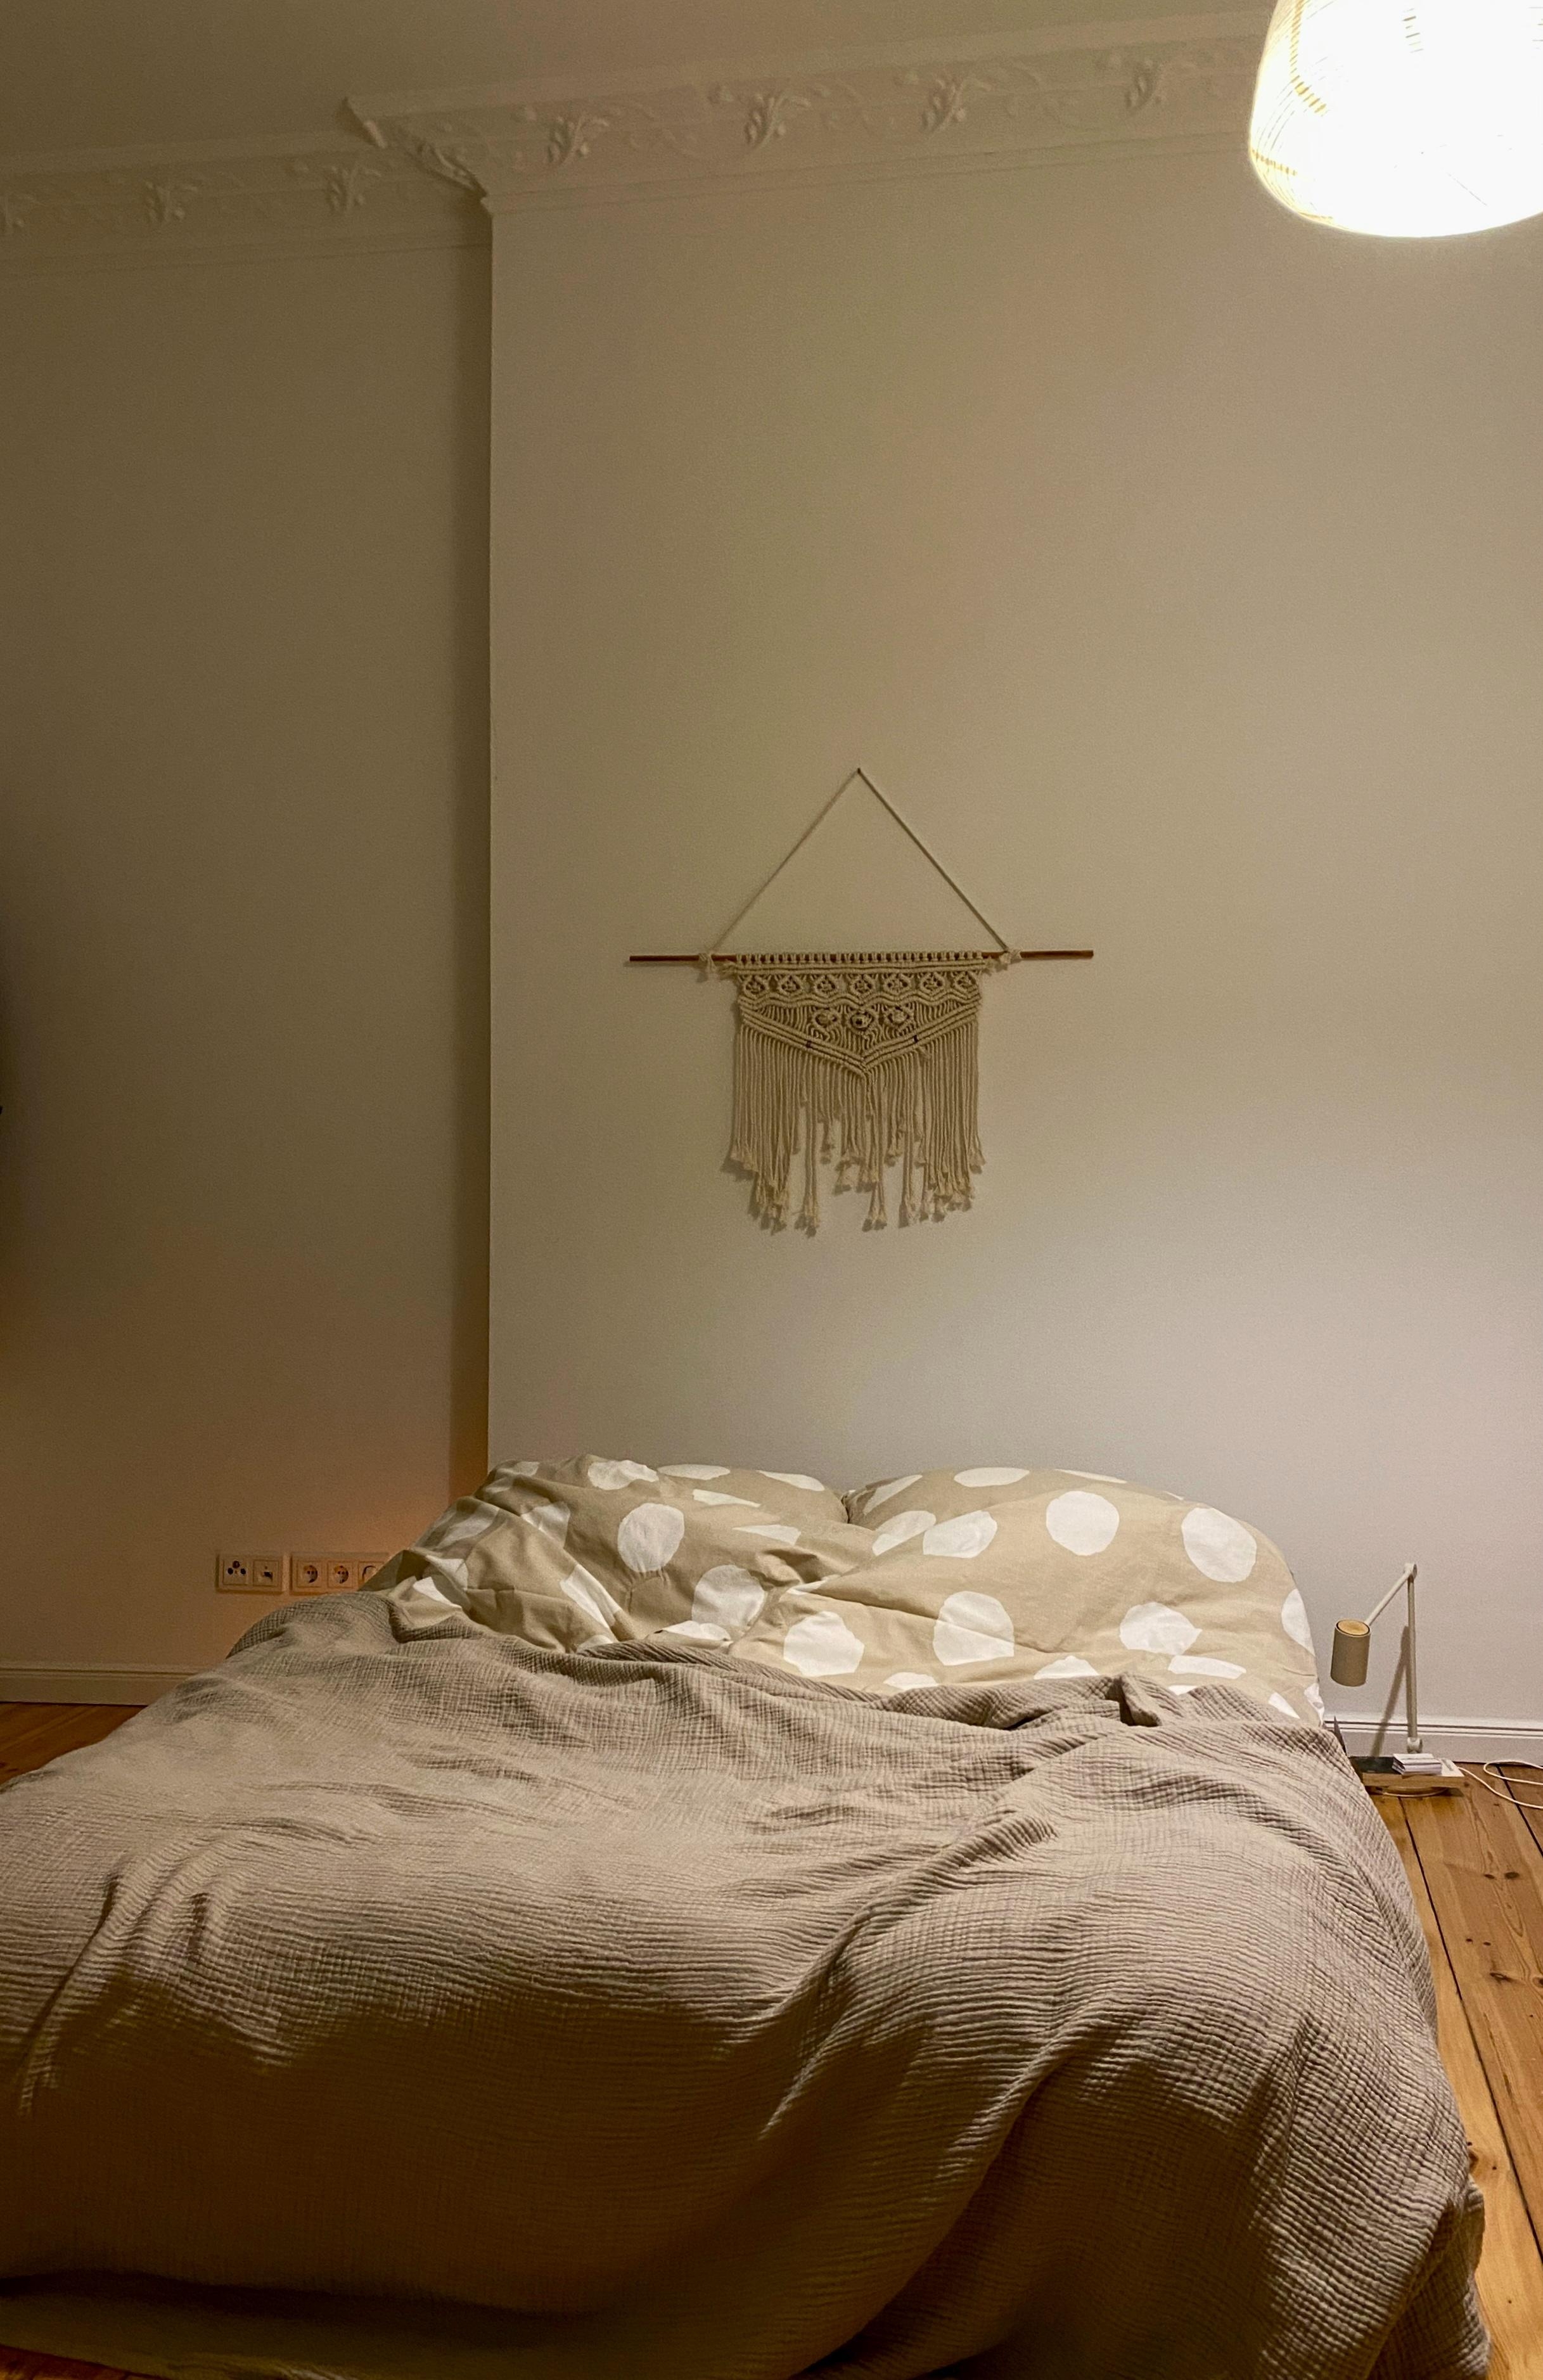 Das frischbezogene Bett. 
Wer liebt es nicht? 

Gute Nacht ✨
#bedroom #cozy #hygge #altbau #couchstyle 